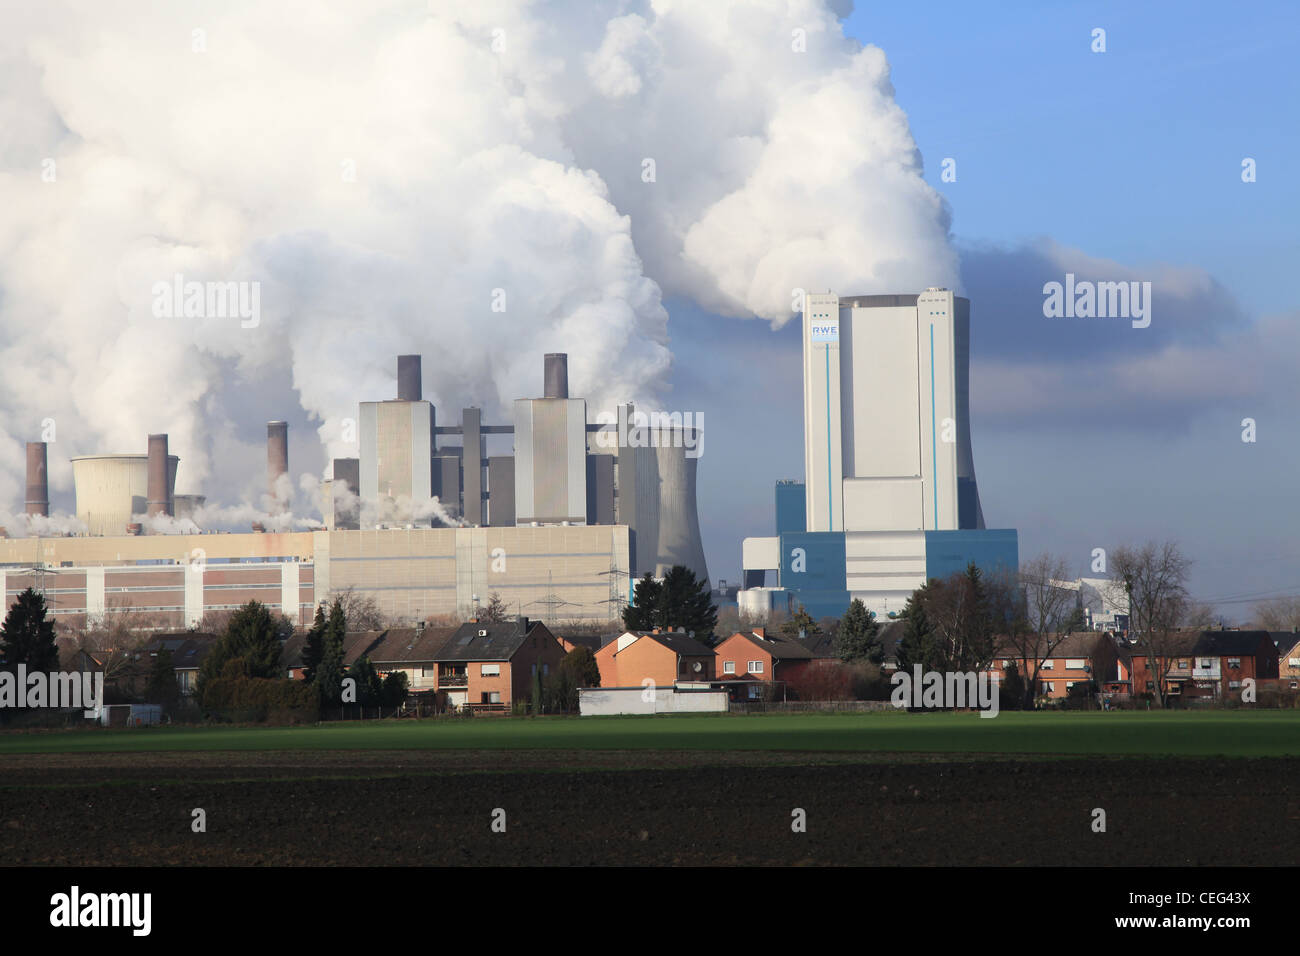 Braunkohle Kraftwerk, Power Station, Power Plant, Elektrizität, Germany, Deutschland, Sonne, blauer Himmel, schönes Wetter Stock Photo